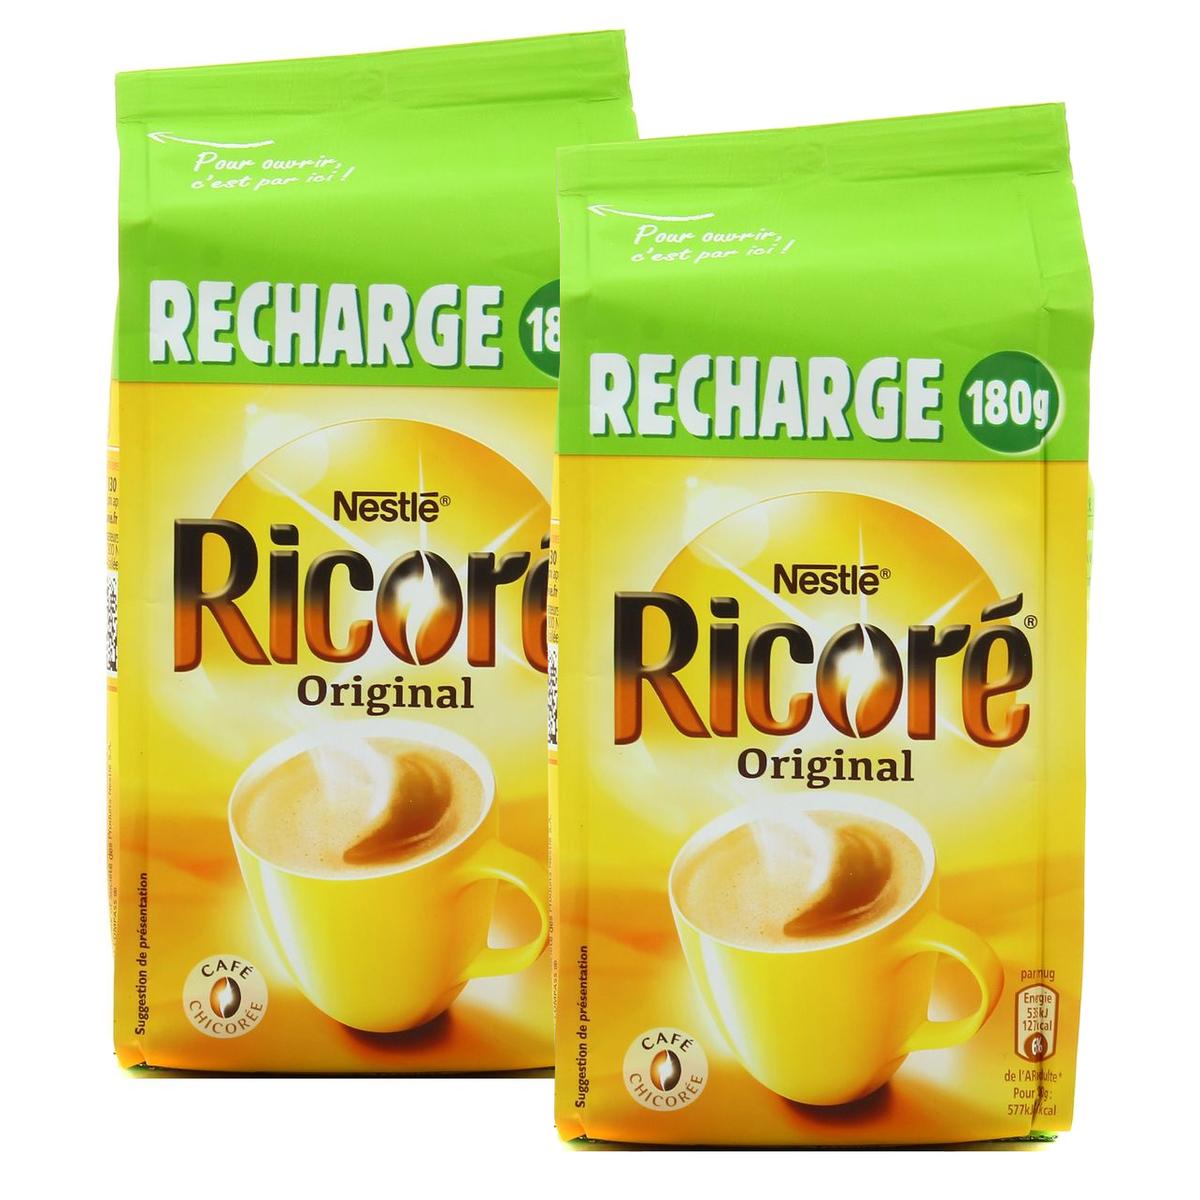 Achat / Vente Promotion Nestlé Ricoré Recharge eco-pack, Lot de 2x180g